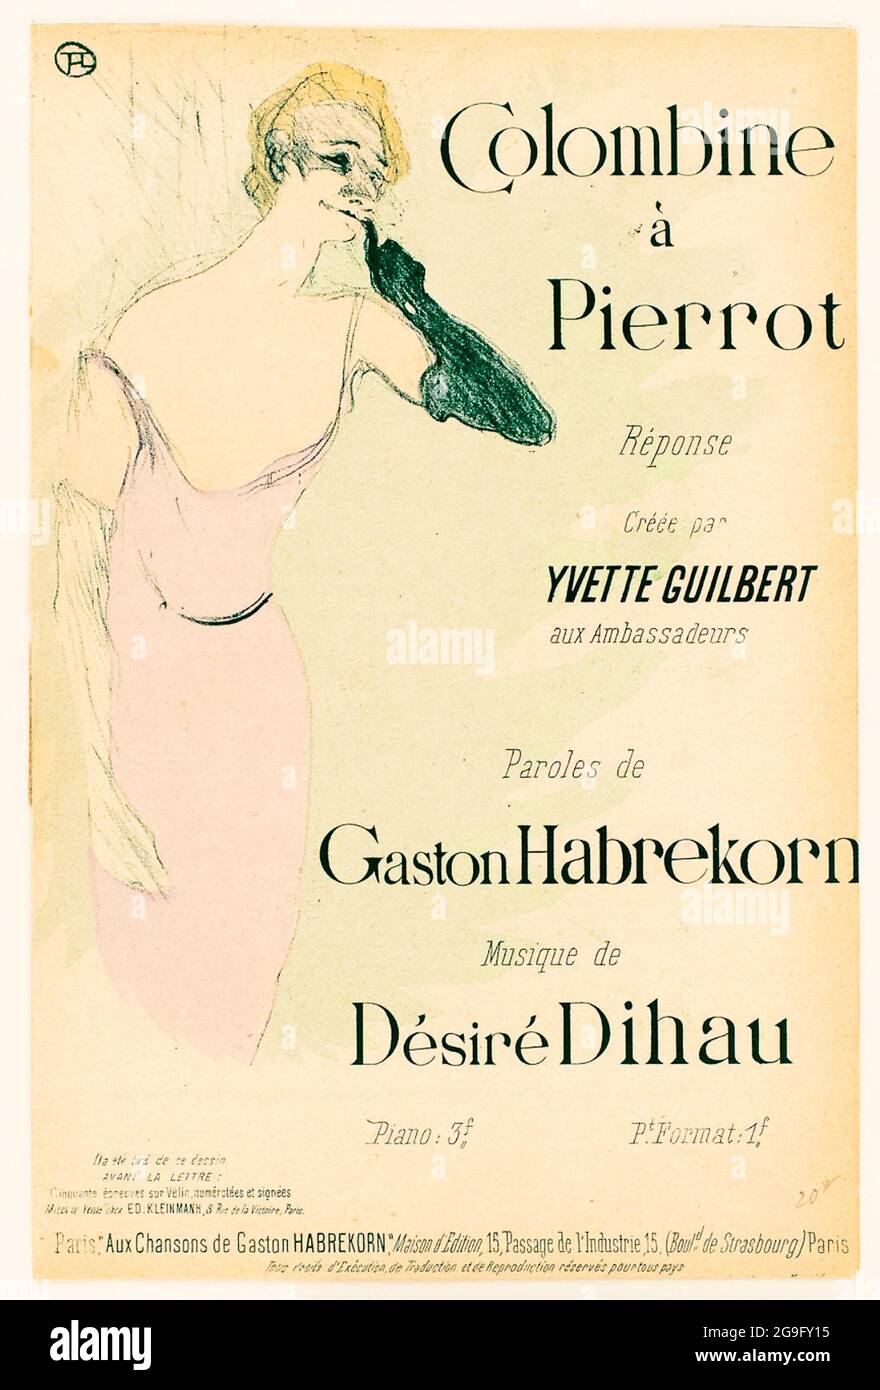 Henri de Toulouse-Lautrec, Yvette Guilbert, dans, Colombine à Pierrot, poster, 1894 Stock Photo